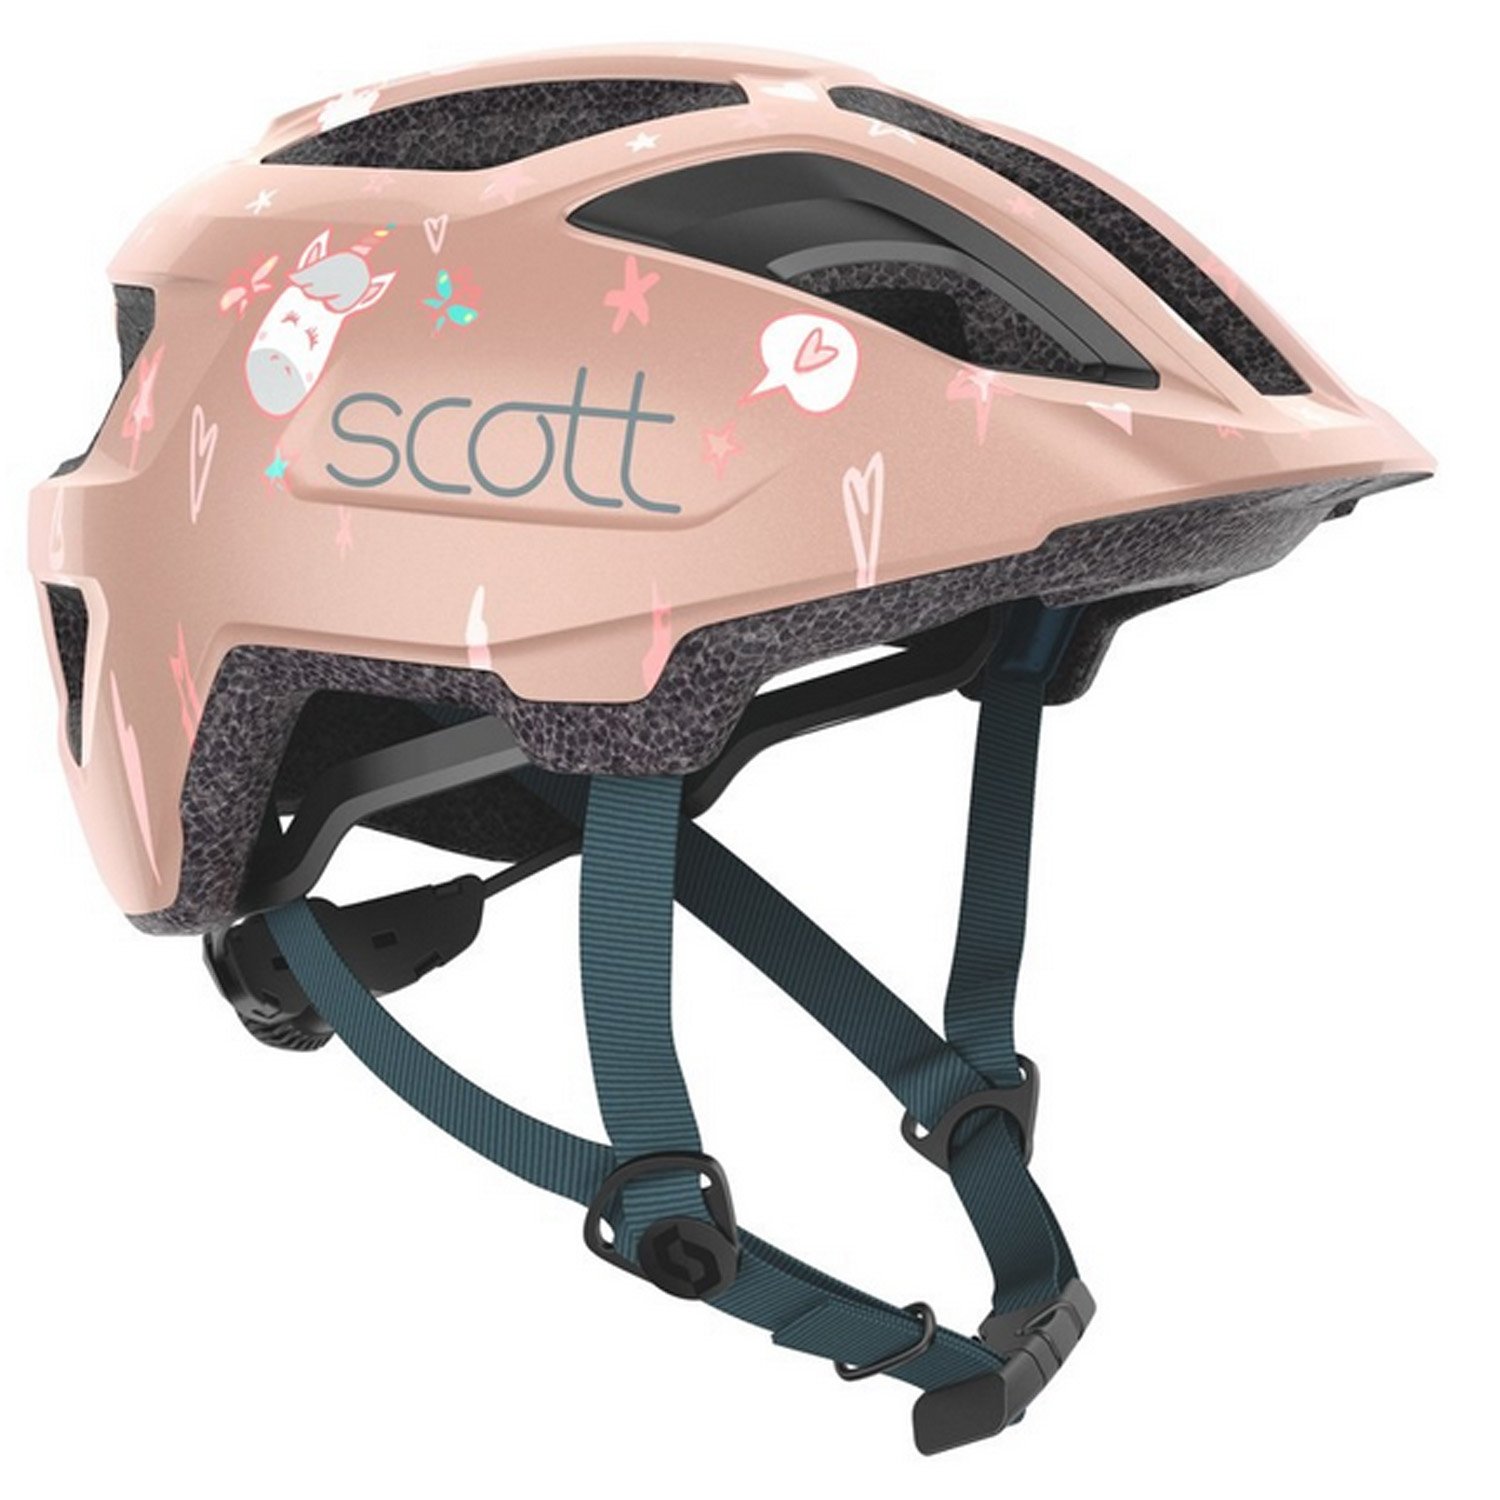 Велошлем SCOTT Kid Spunto (CE), crystal pink, ES275235-7174 шлем велосипедный scott spunto kid azalea pink onesize 50 56 см 2019 270115 5815